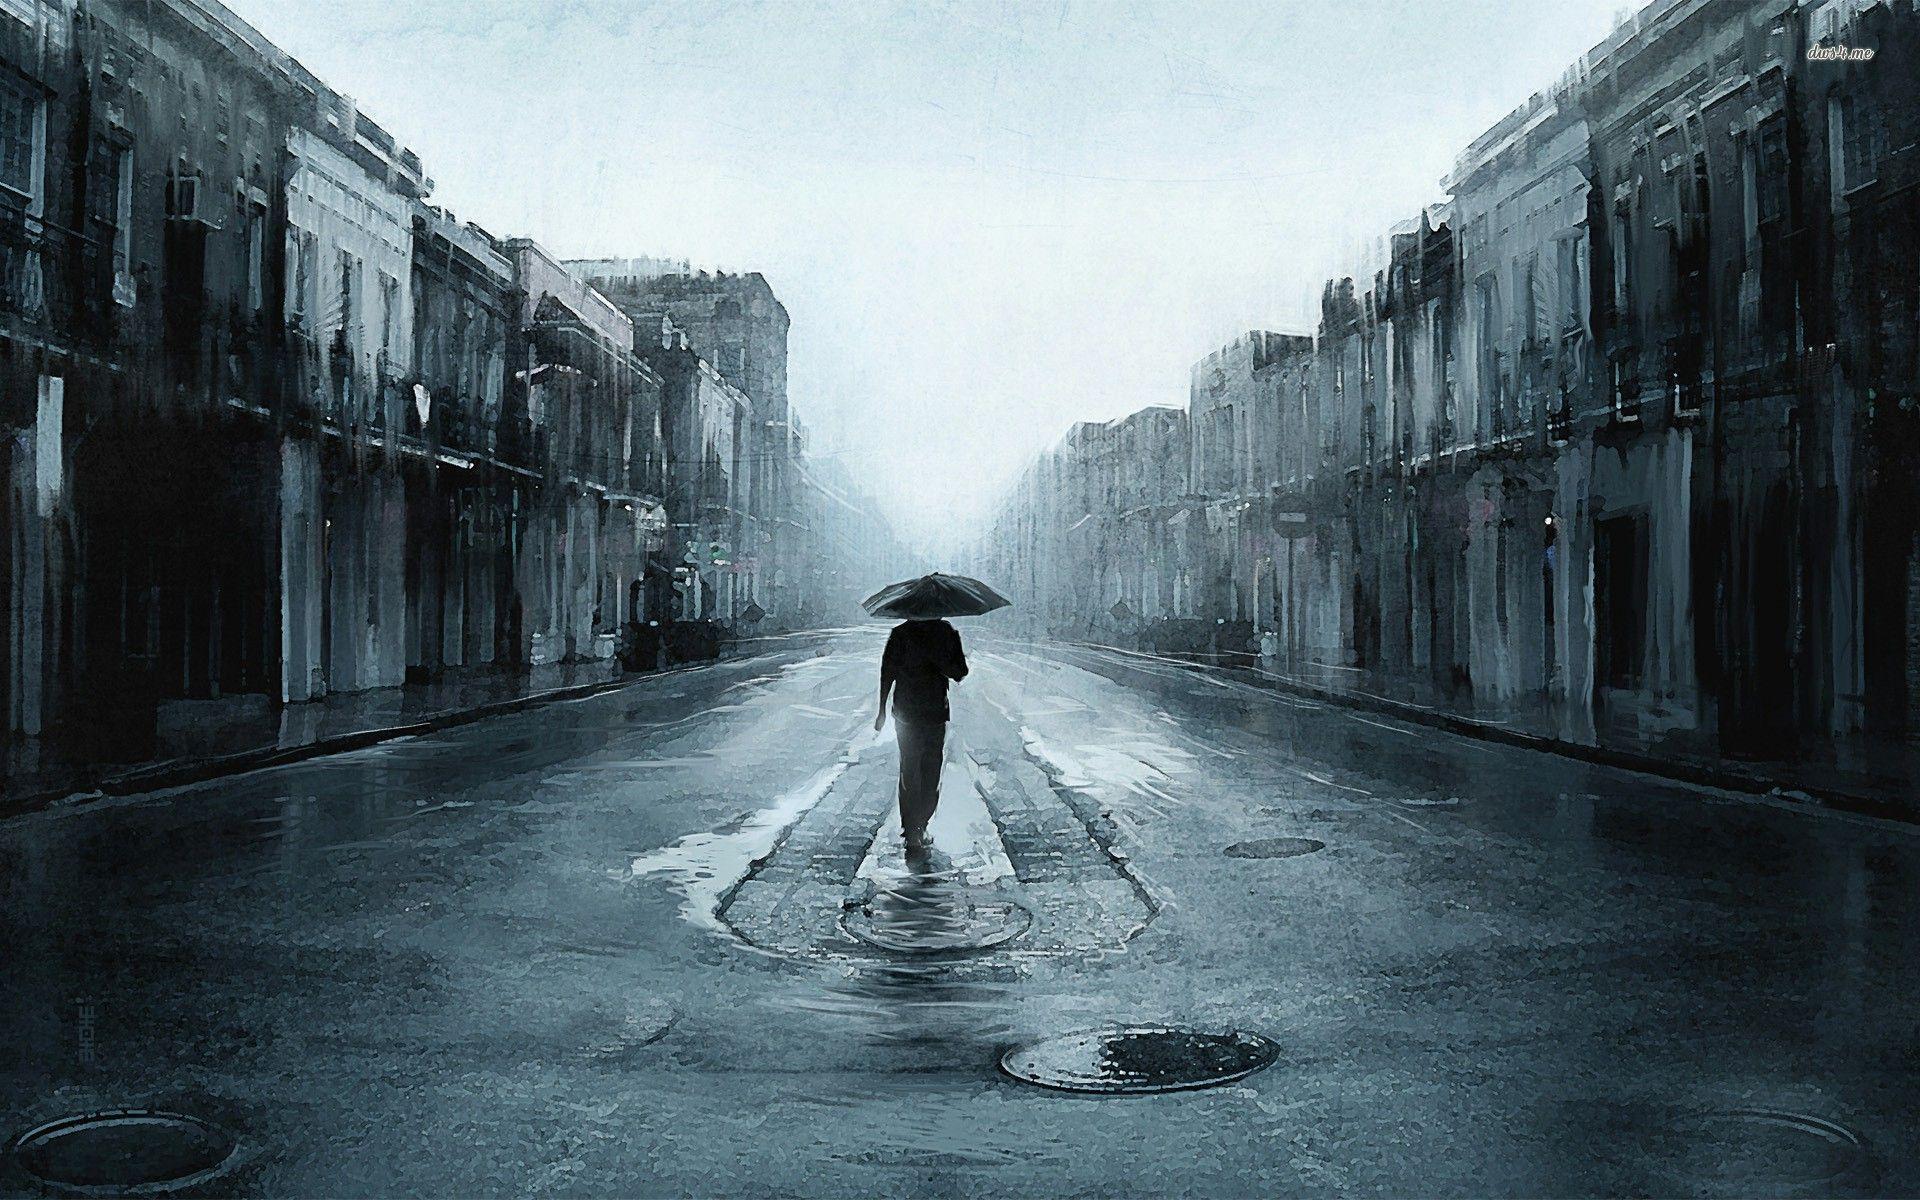 Walking in the rainy street wallpaper wallpaper - #